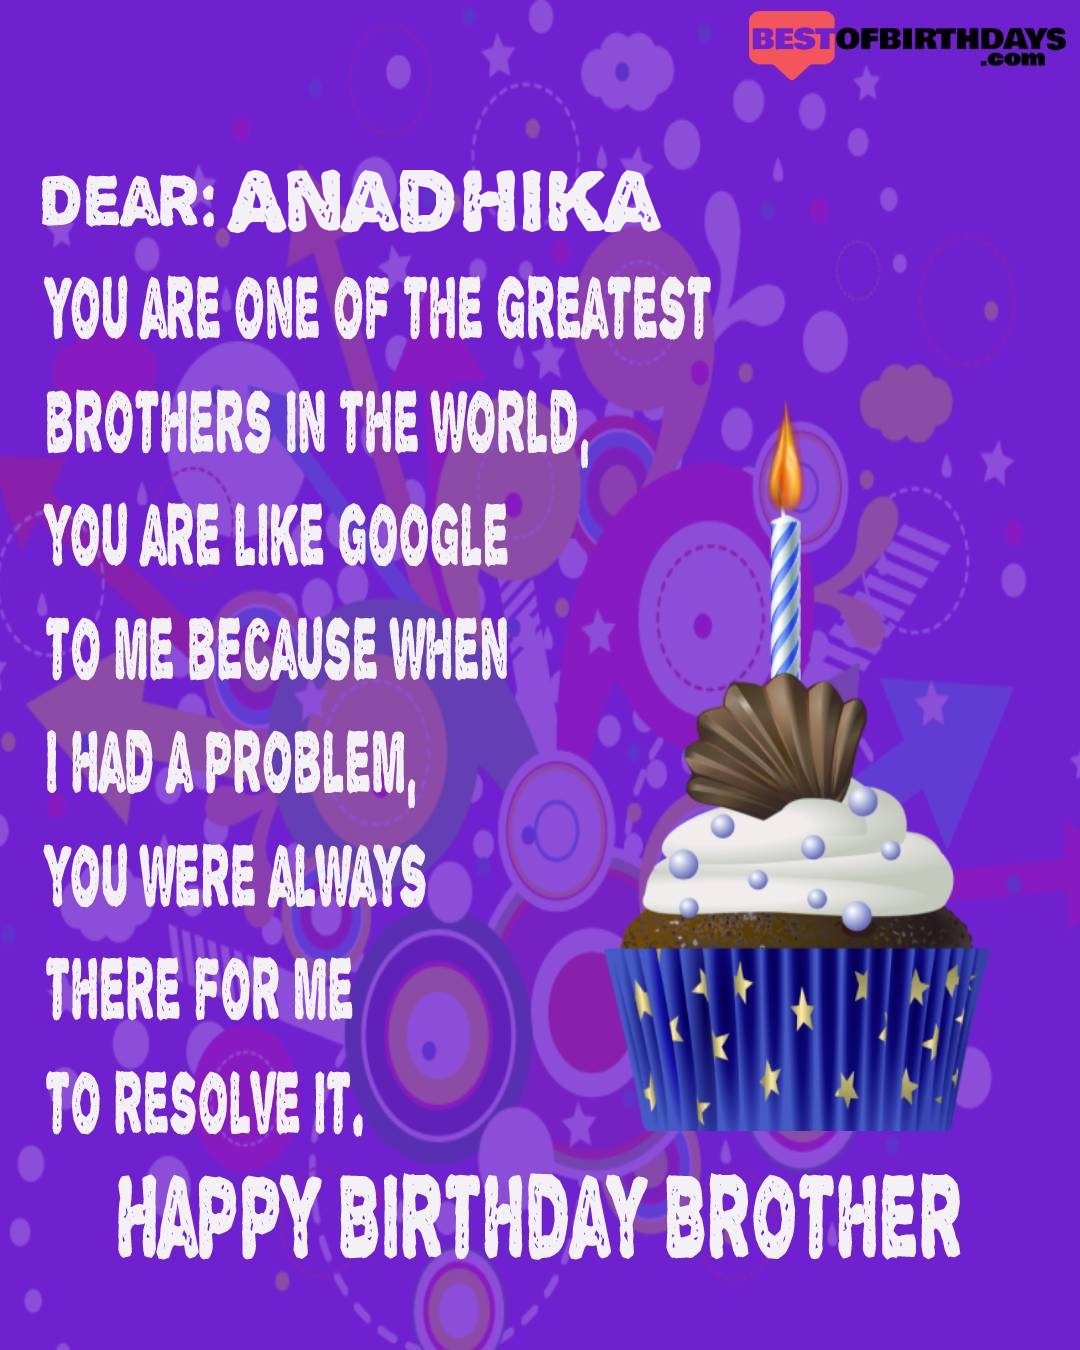 Happy birthday anadhika bhai brother bro